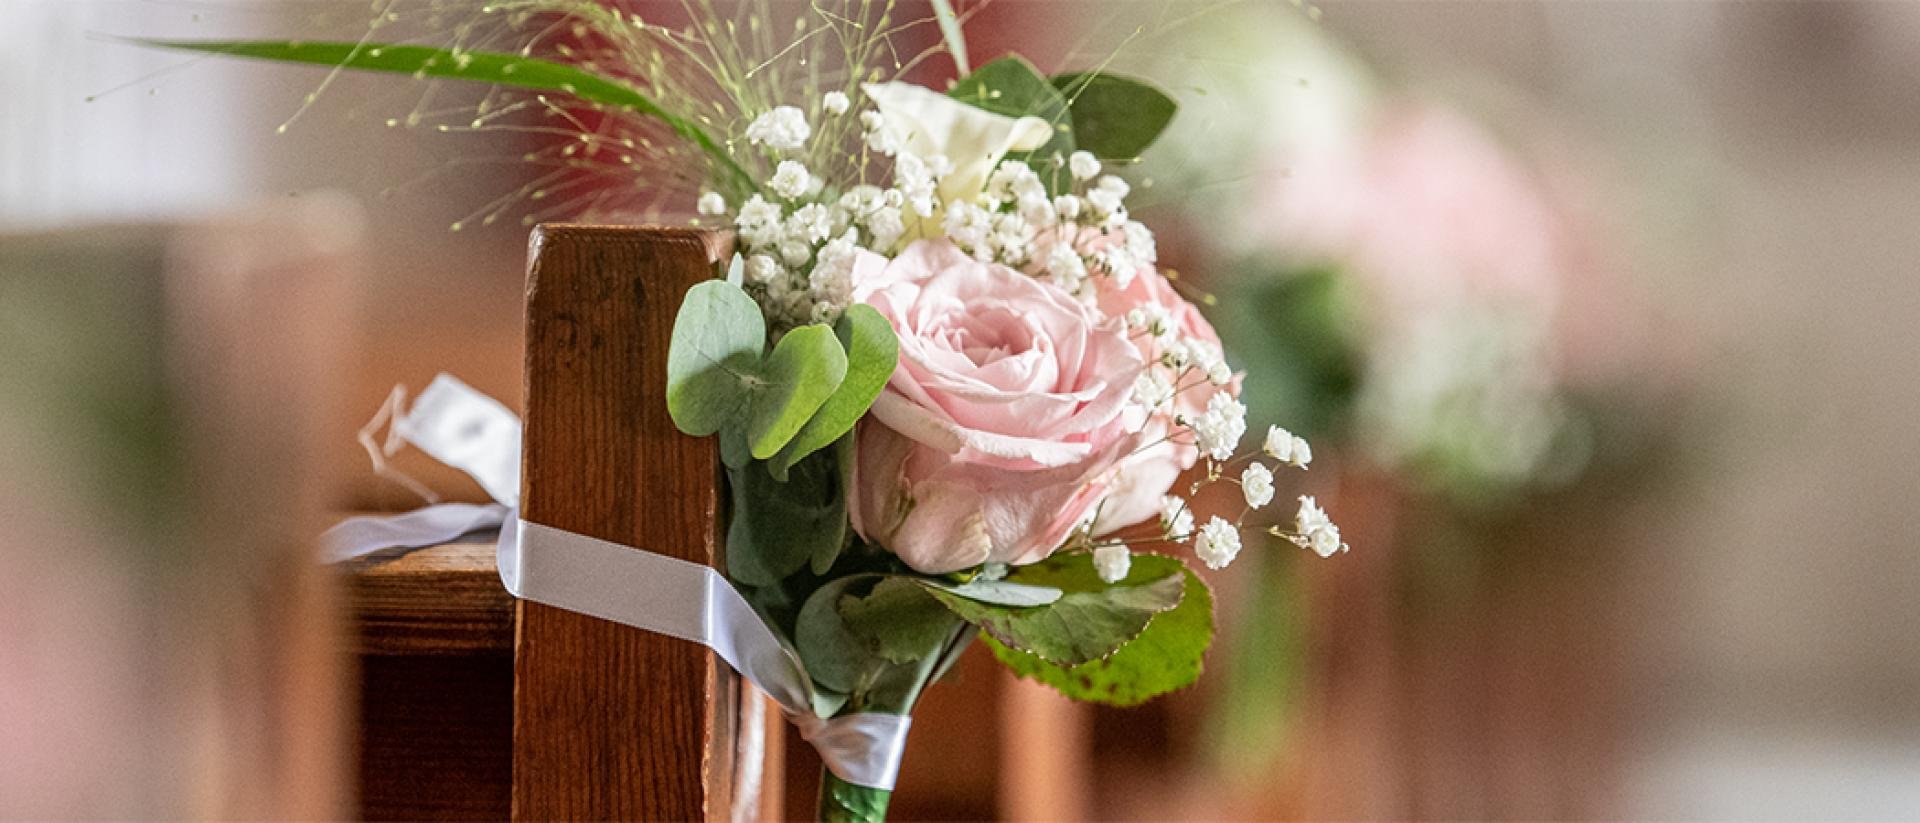 Een boeket van roze bloemen met op de achtergrond wazig afgebeeld roze bloemen aan kerkbanken.